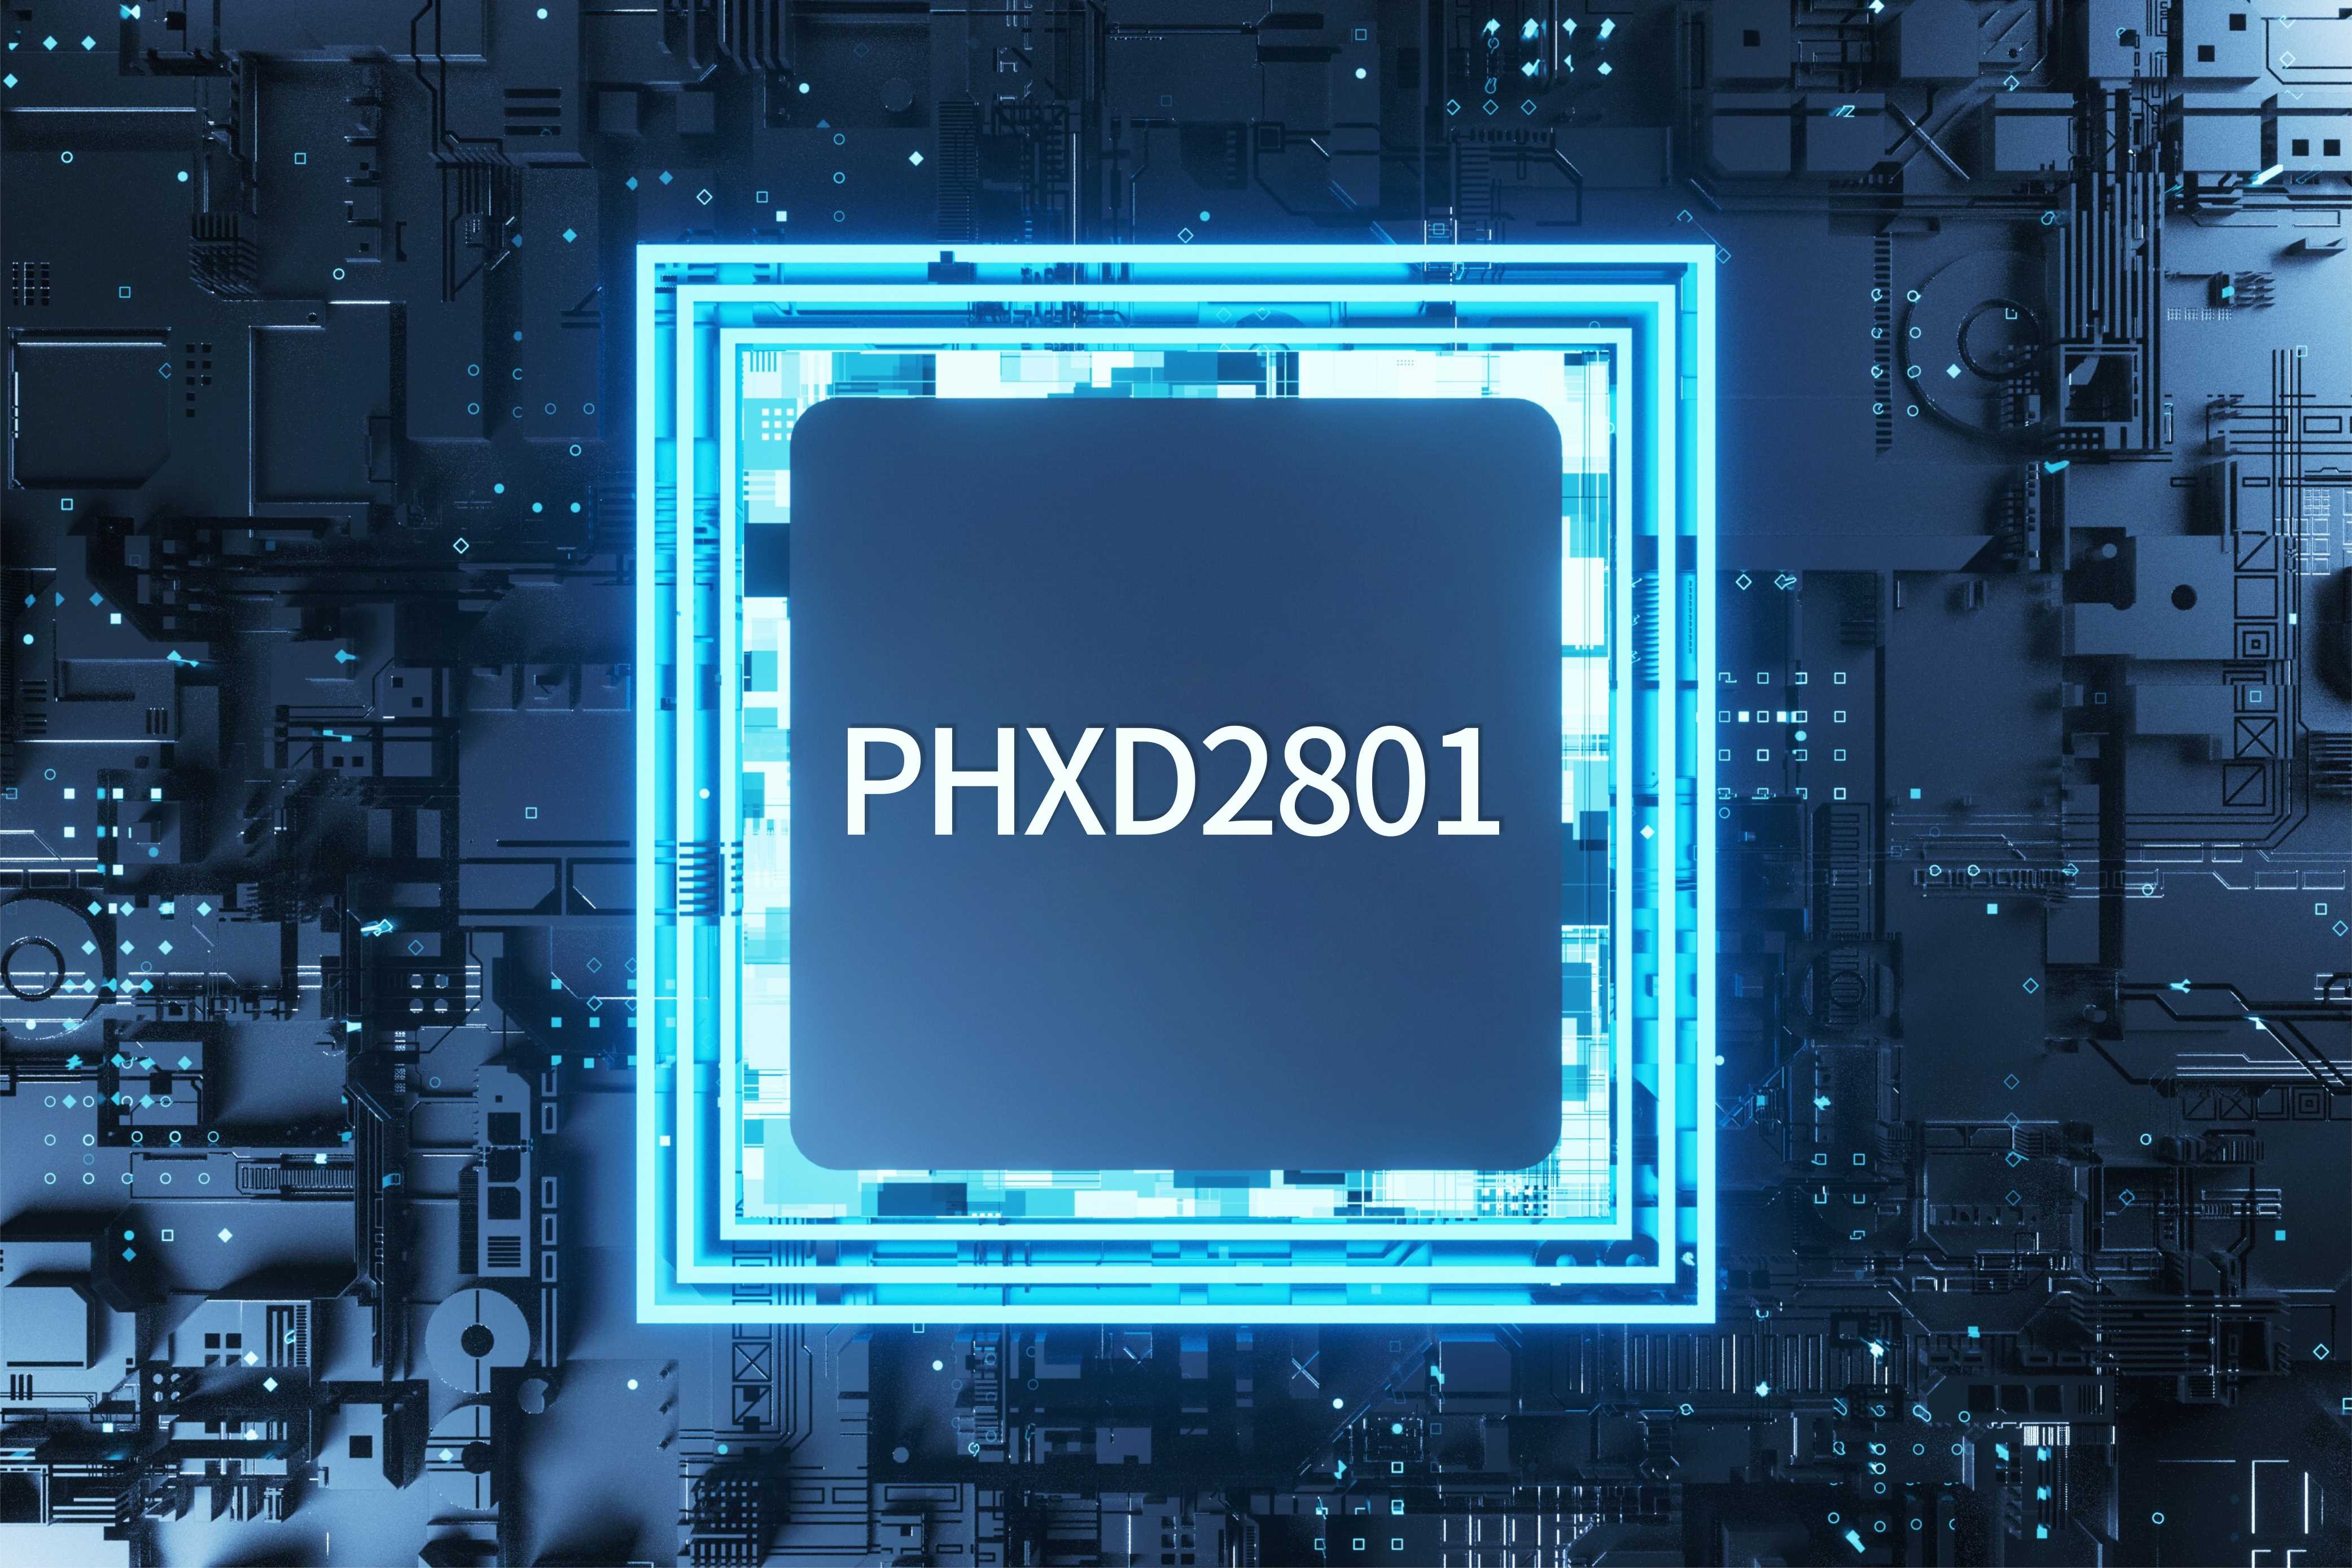 PHXD2801